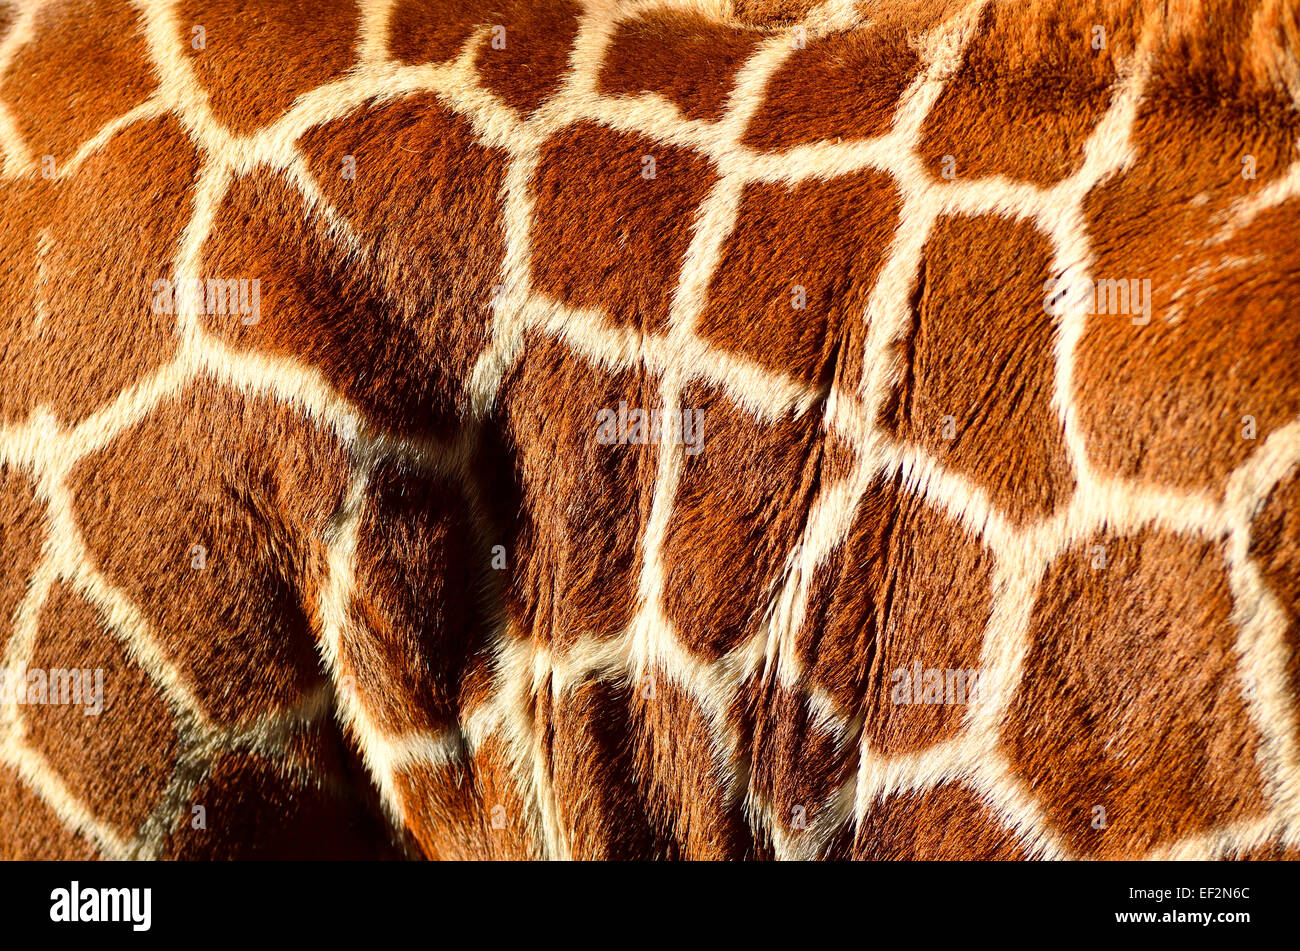 Corps de girafe sur camouflage hide Banque D'Images